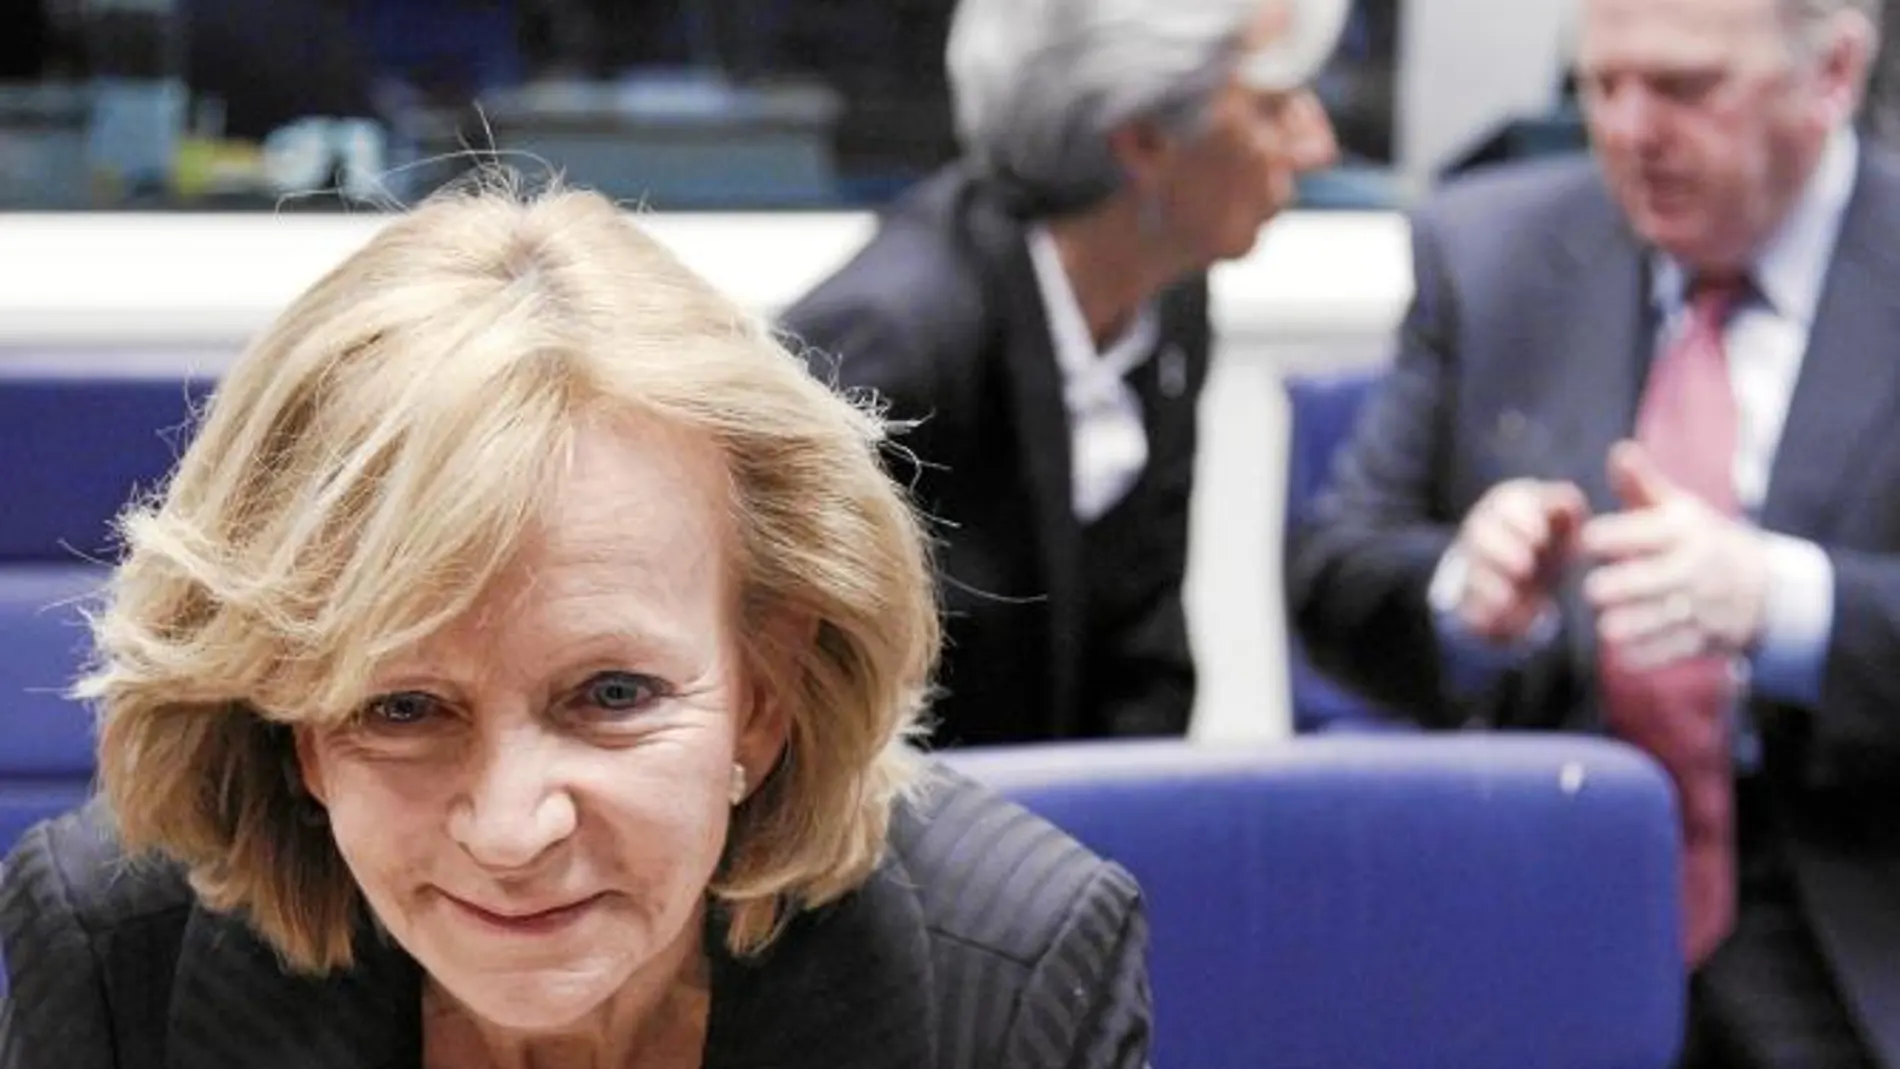 La vicepresidenta segunda del Gobierno y ministra de Economía, Elena Salgado, se mostró convencida del apoyo de la eurozona a la economía griega. De hecho, el «unico escenario» que prevén es la aprobación del plan de ajuste